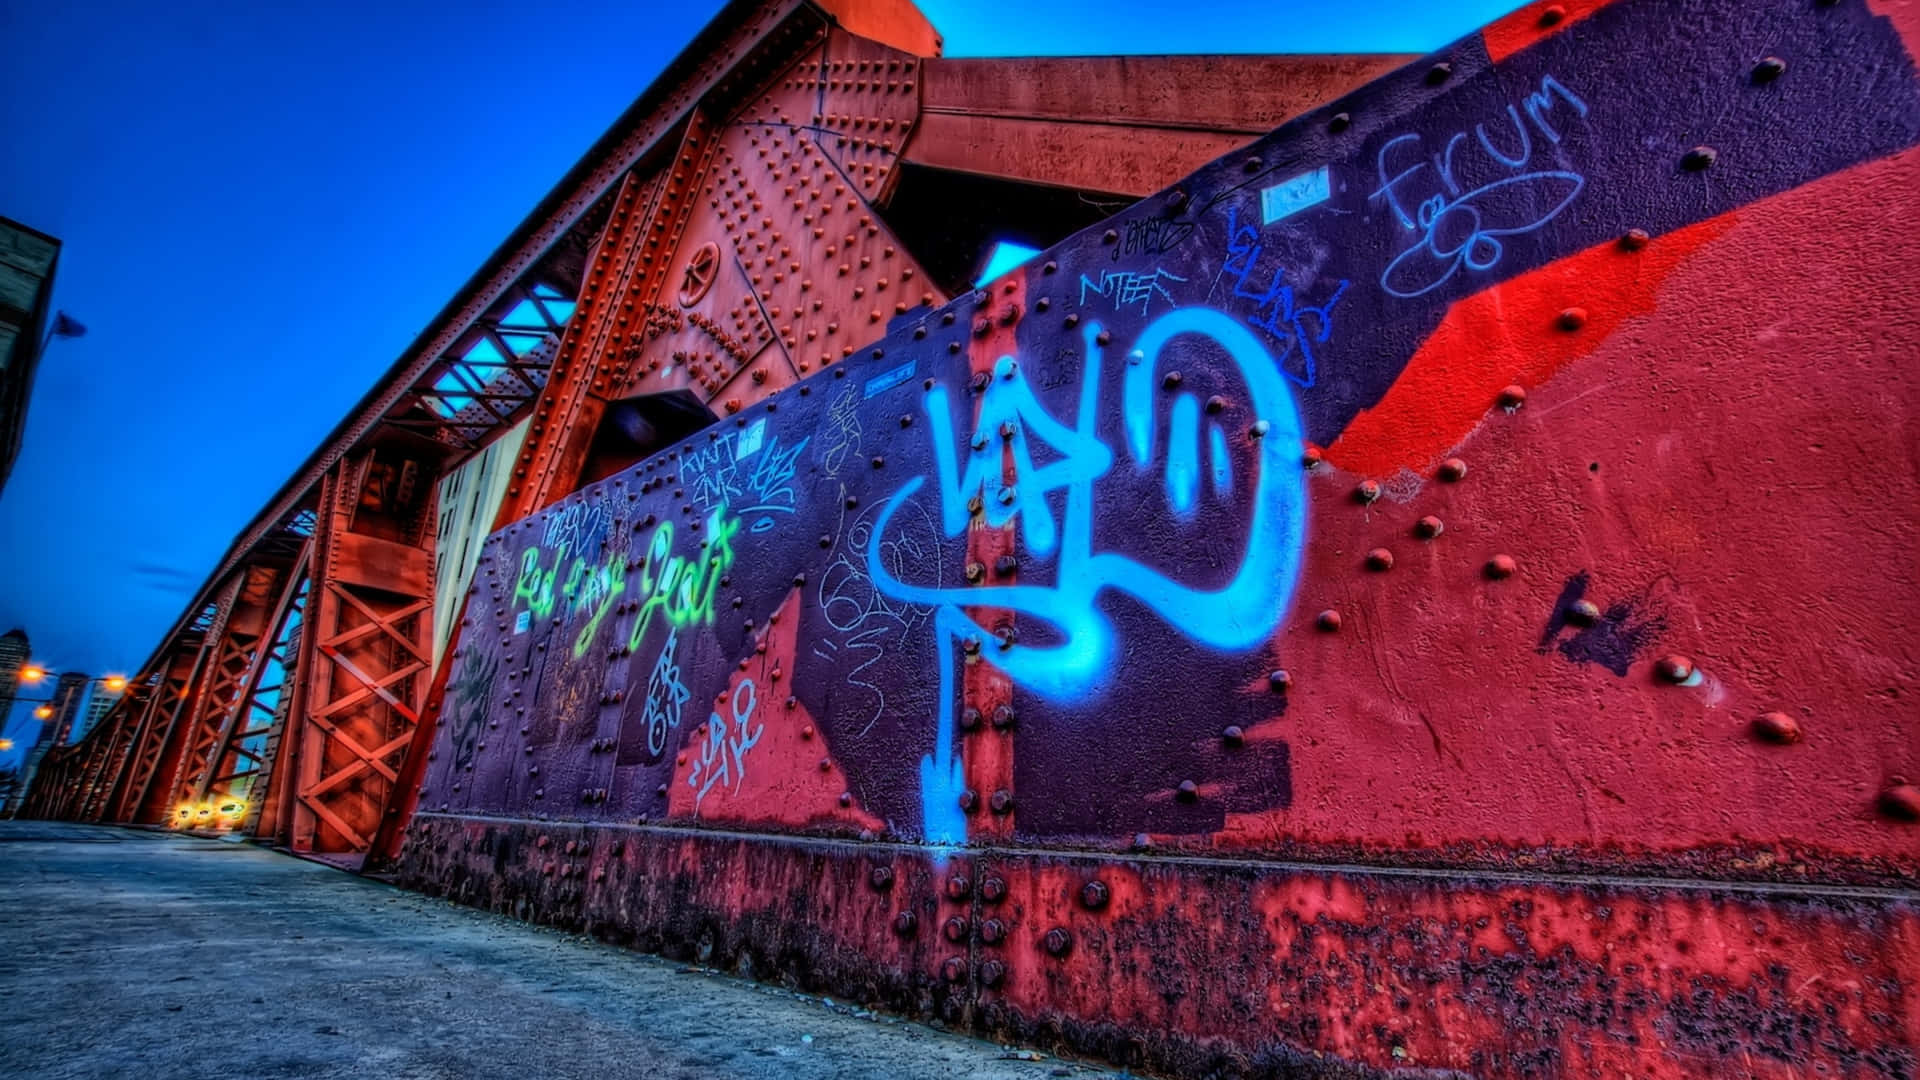 Urban Art Comes Alive in Vibrant Graffiti Wallpaper